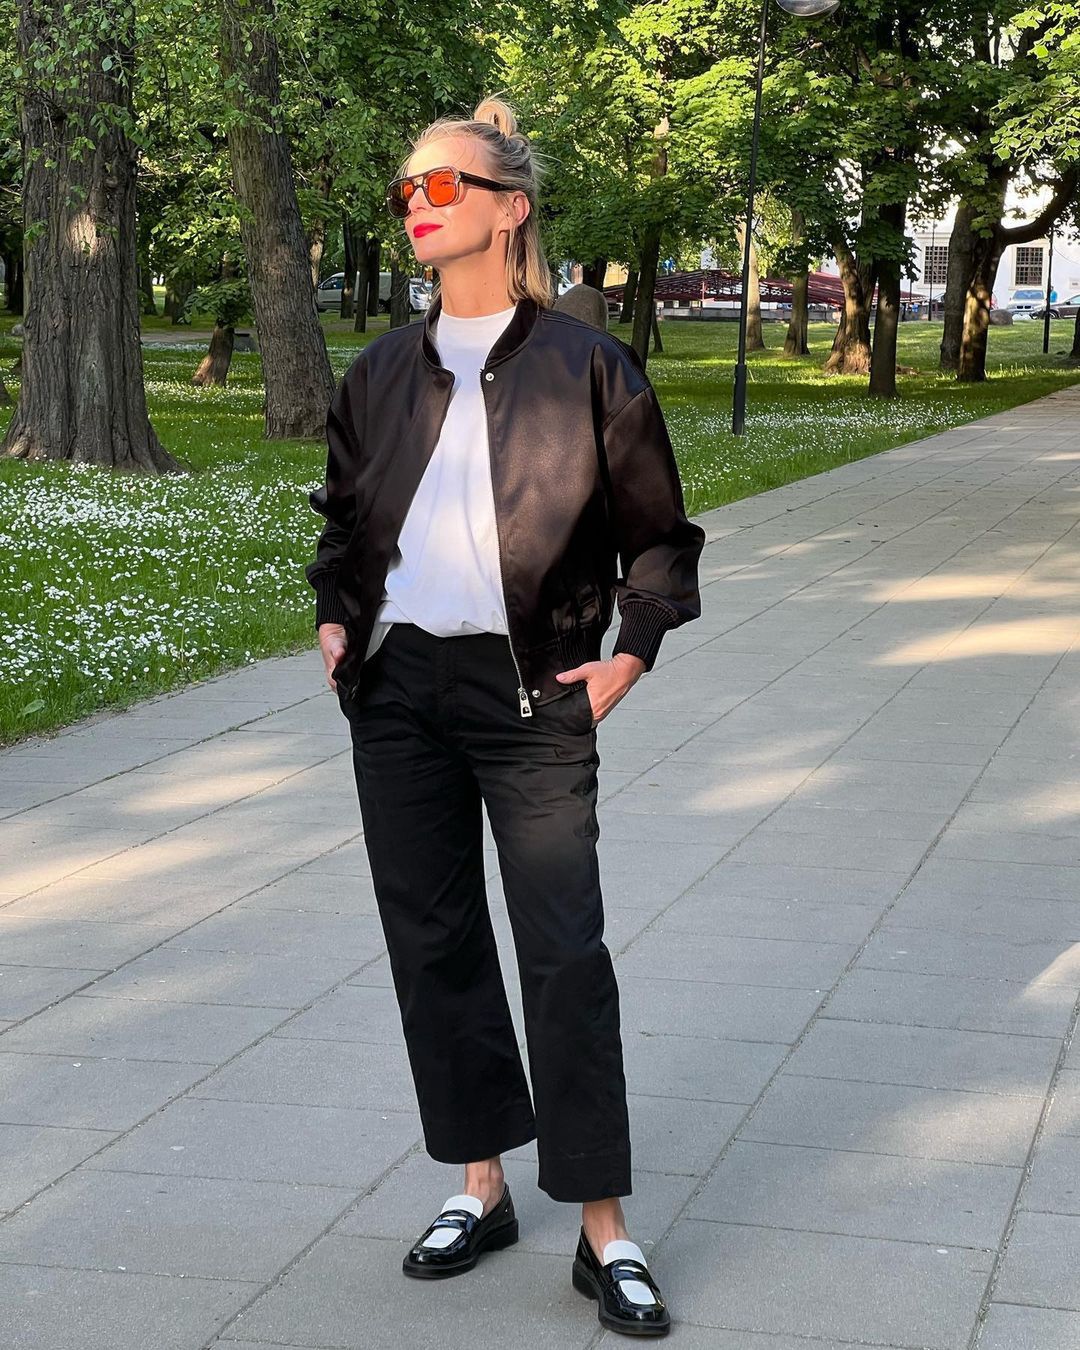 Magda Mołek w biało-czarnej stylizacji na spacerze w parku
Instagram/magda_molek